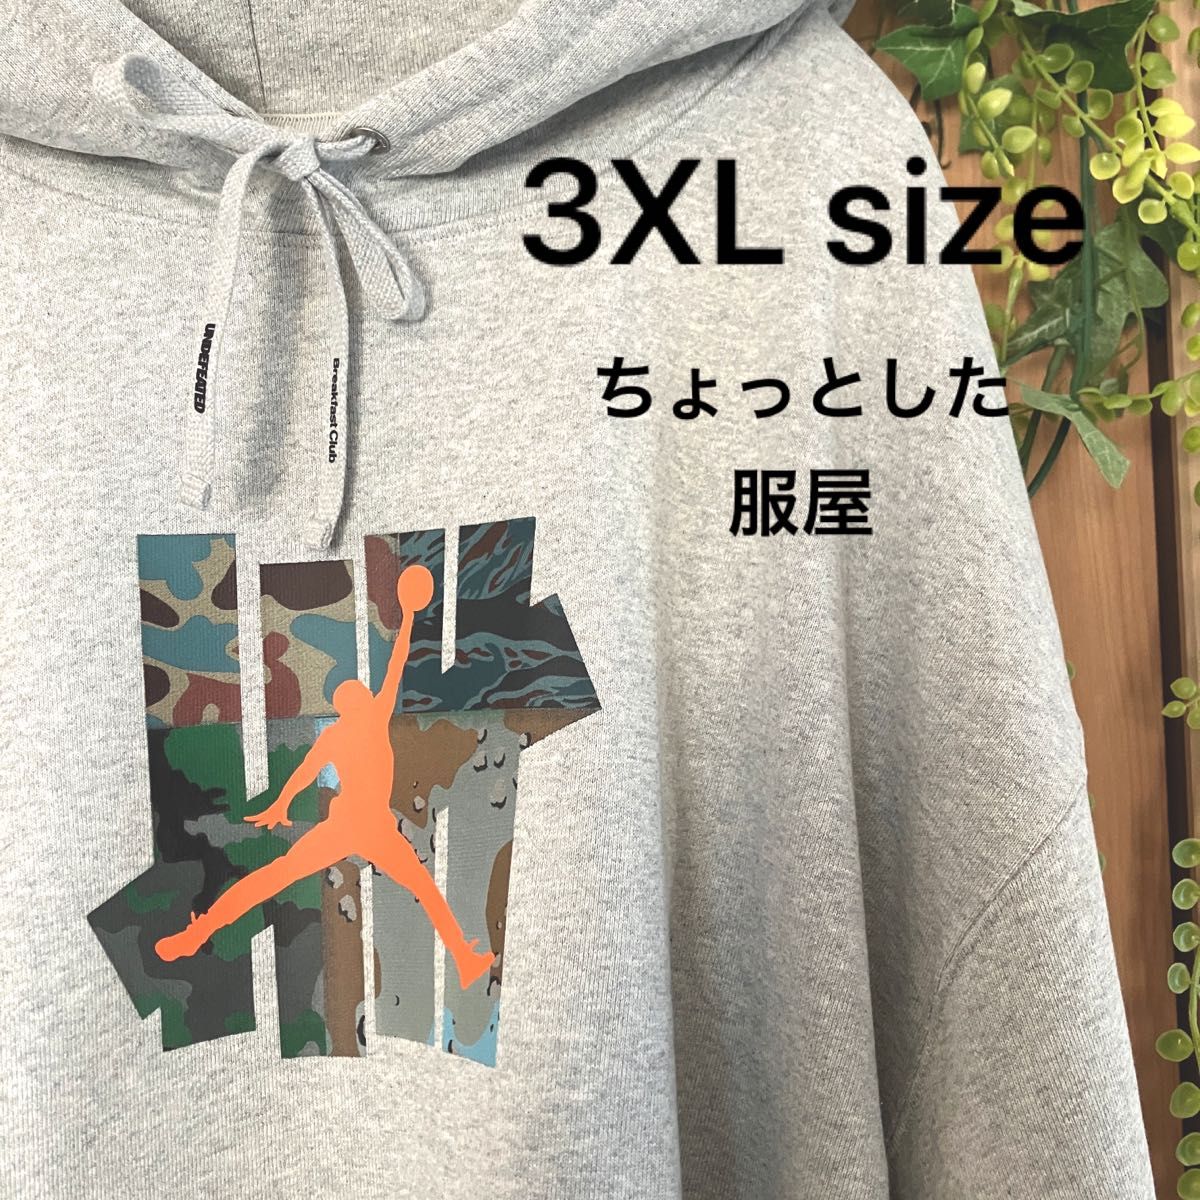 【新品】NIKE JORDAN × UNDFTD L/S HOODIE 3XL size